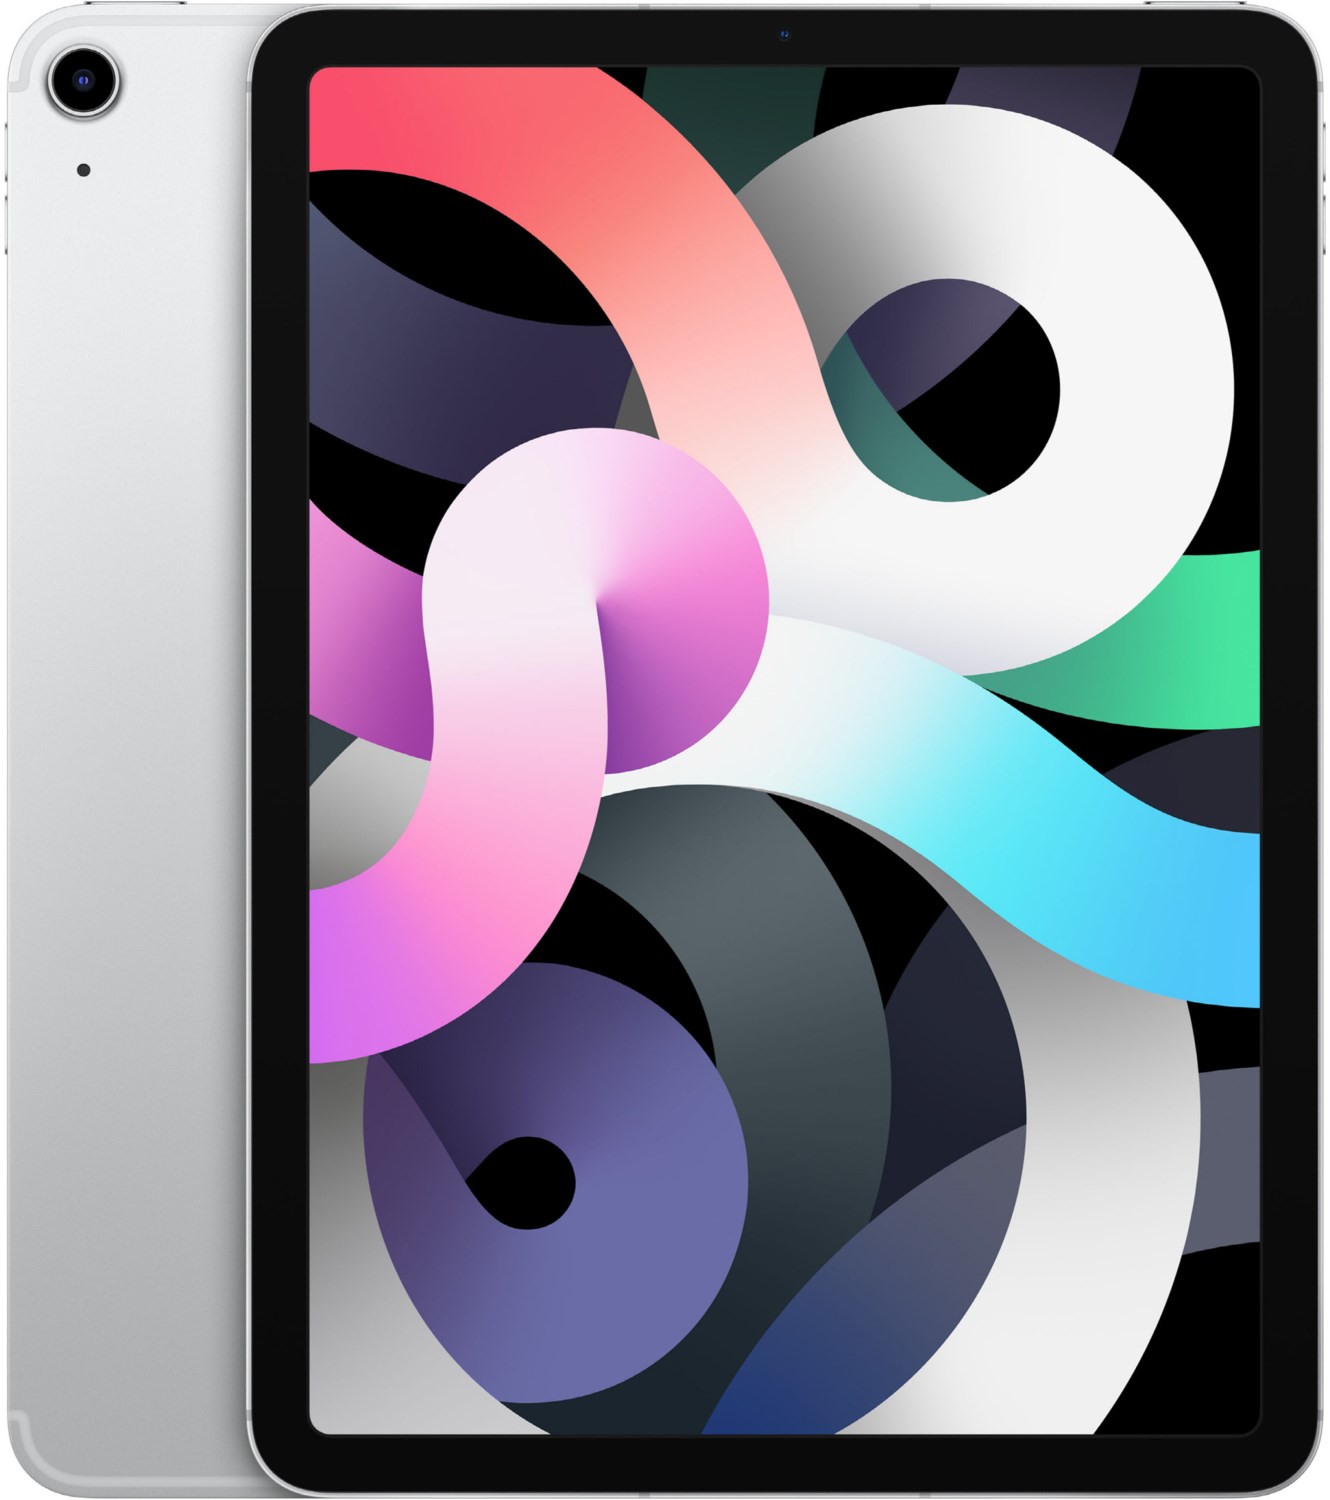 Apple iPad Air (64GB) WiFi + 4G 4th Generation (2020) Silver